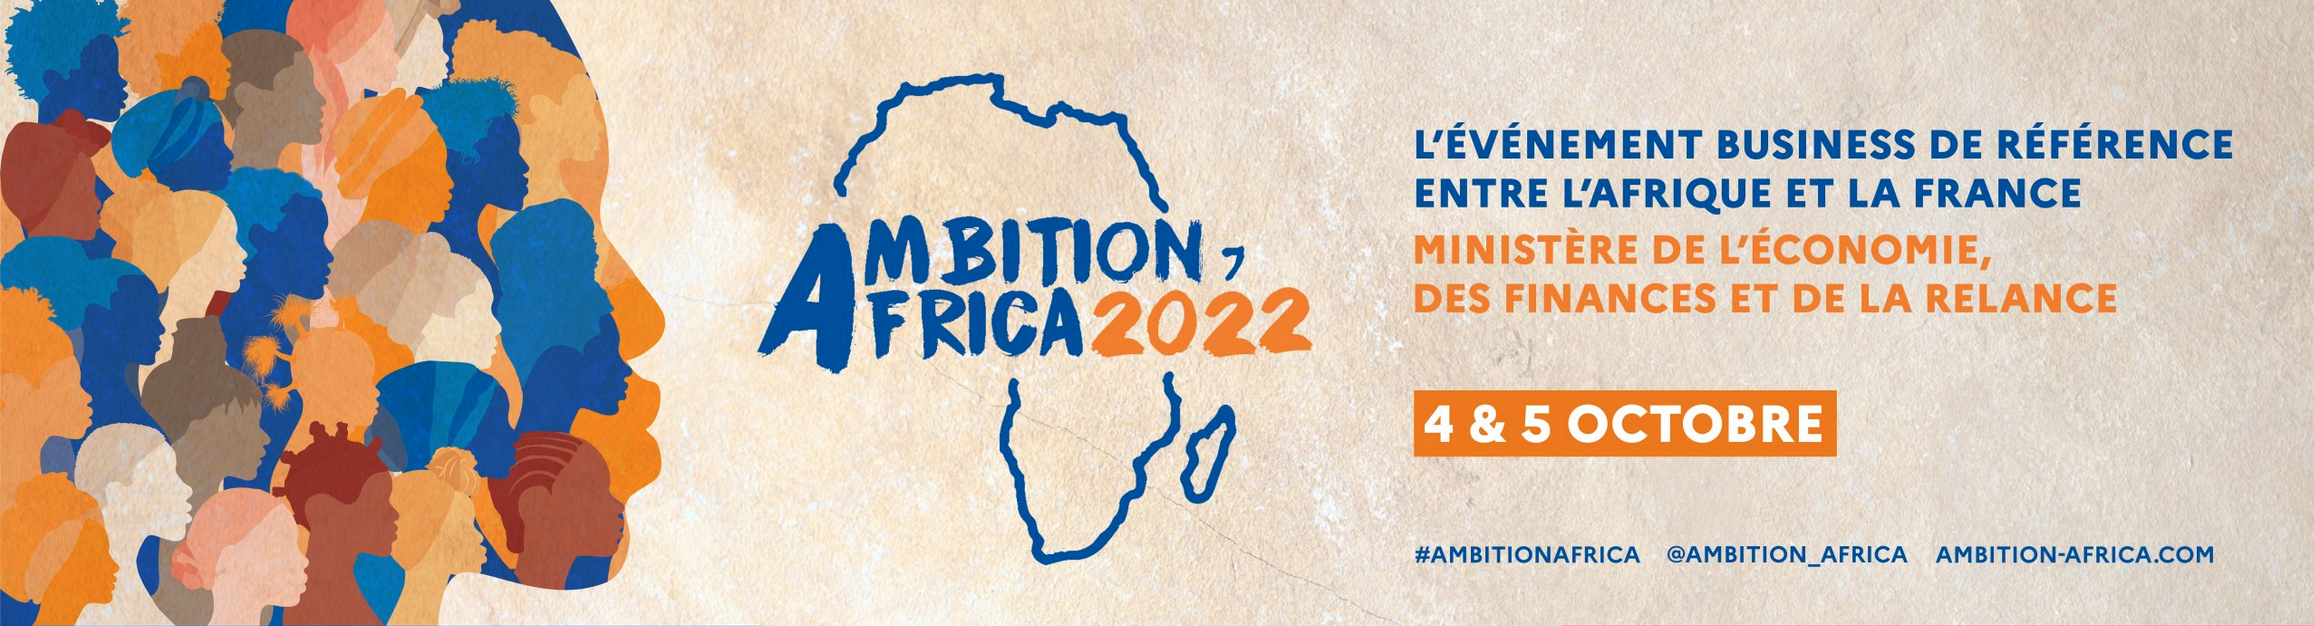 Ne ratez pas la 4ème édition d’Ambition Africa en partenariat avec Africa Mutandi !!!